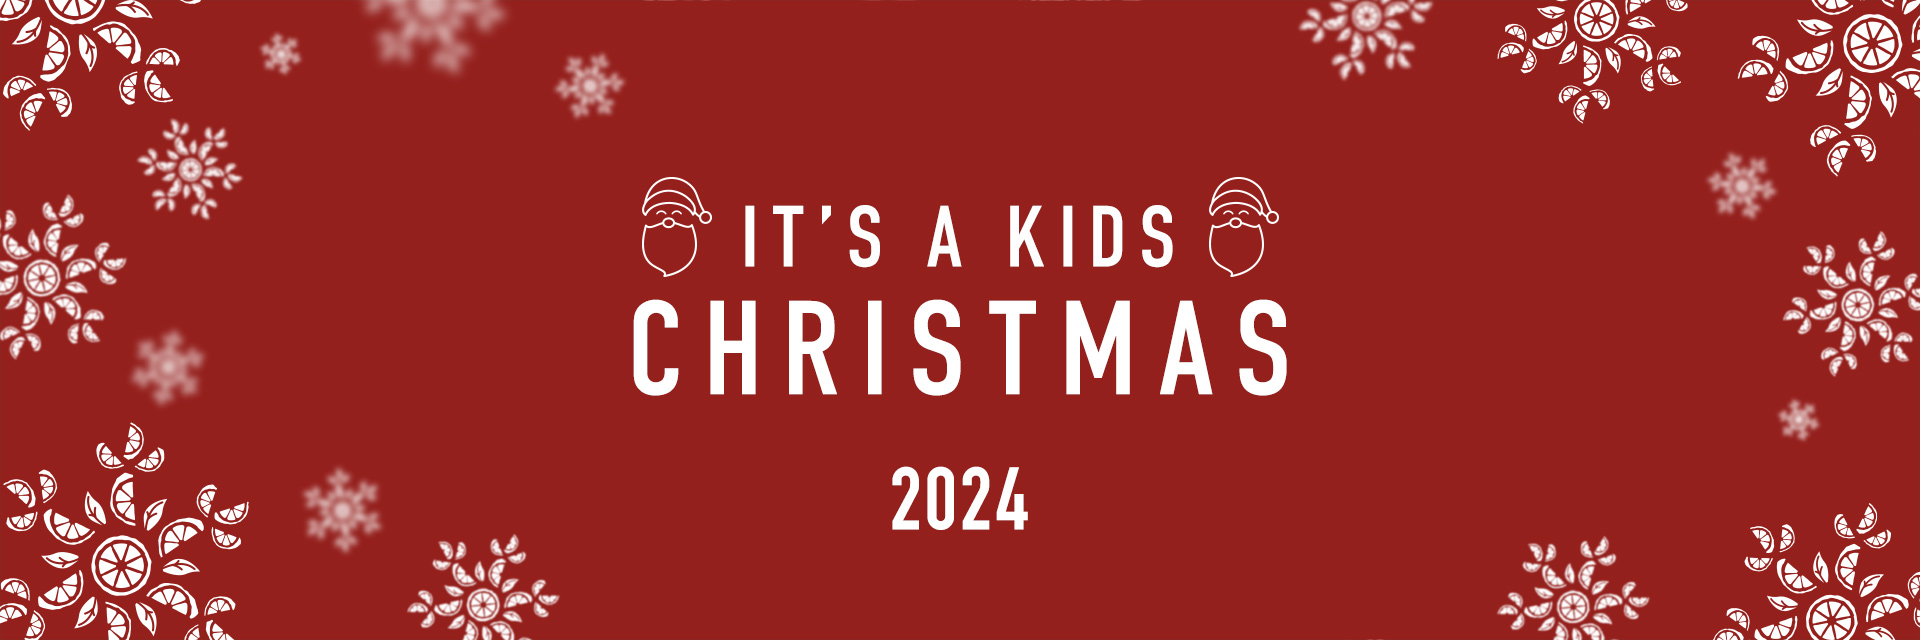 Kids Christmas Menu 2024 at The Golden Fleece